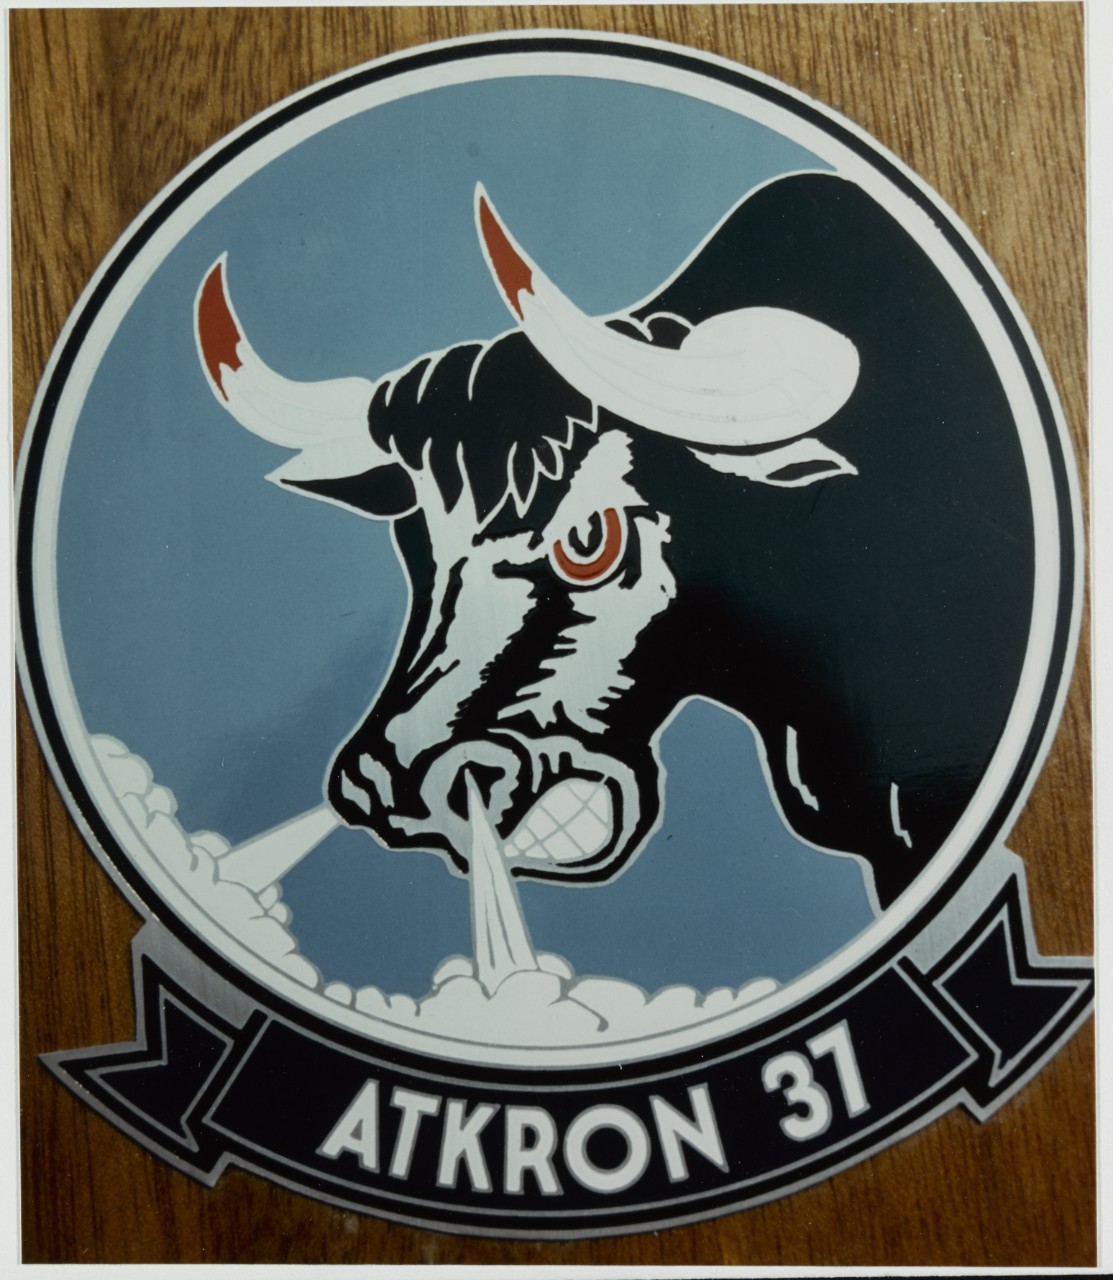 Insignia: Attack Squadron 37 (VA-37). Atkron 37